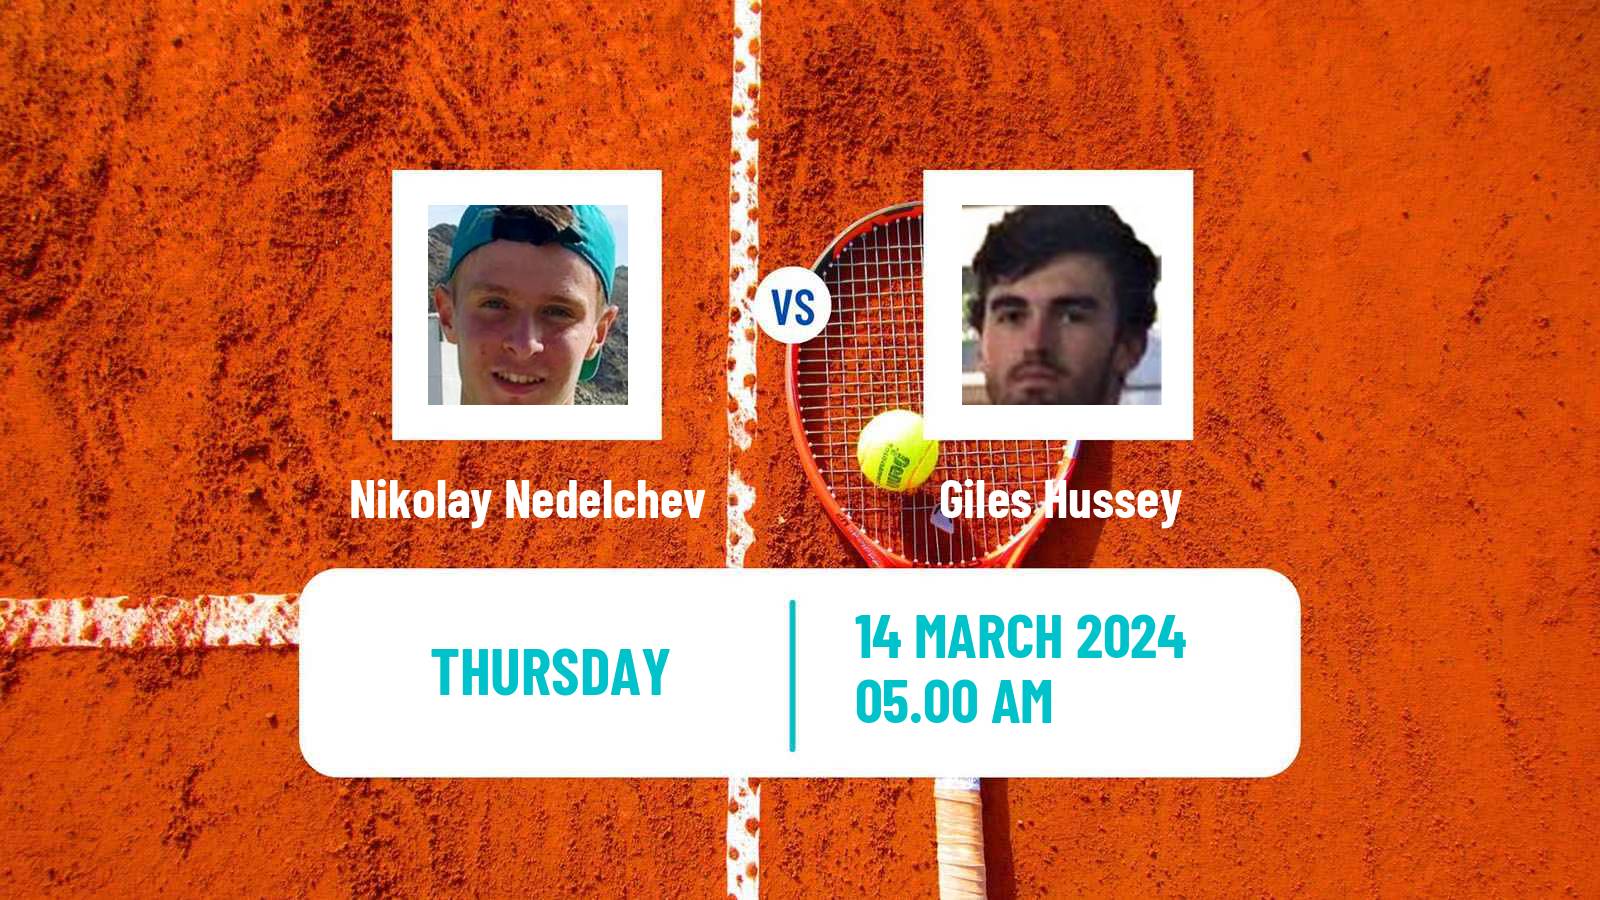 Tennis ITF M15 Les Franqueses Del Valles Men Nikolay Nedelchev - Giles Hussey